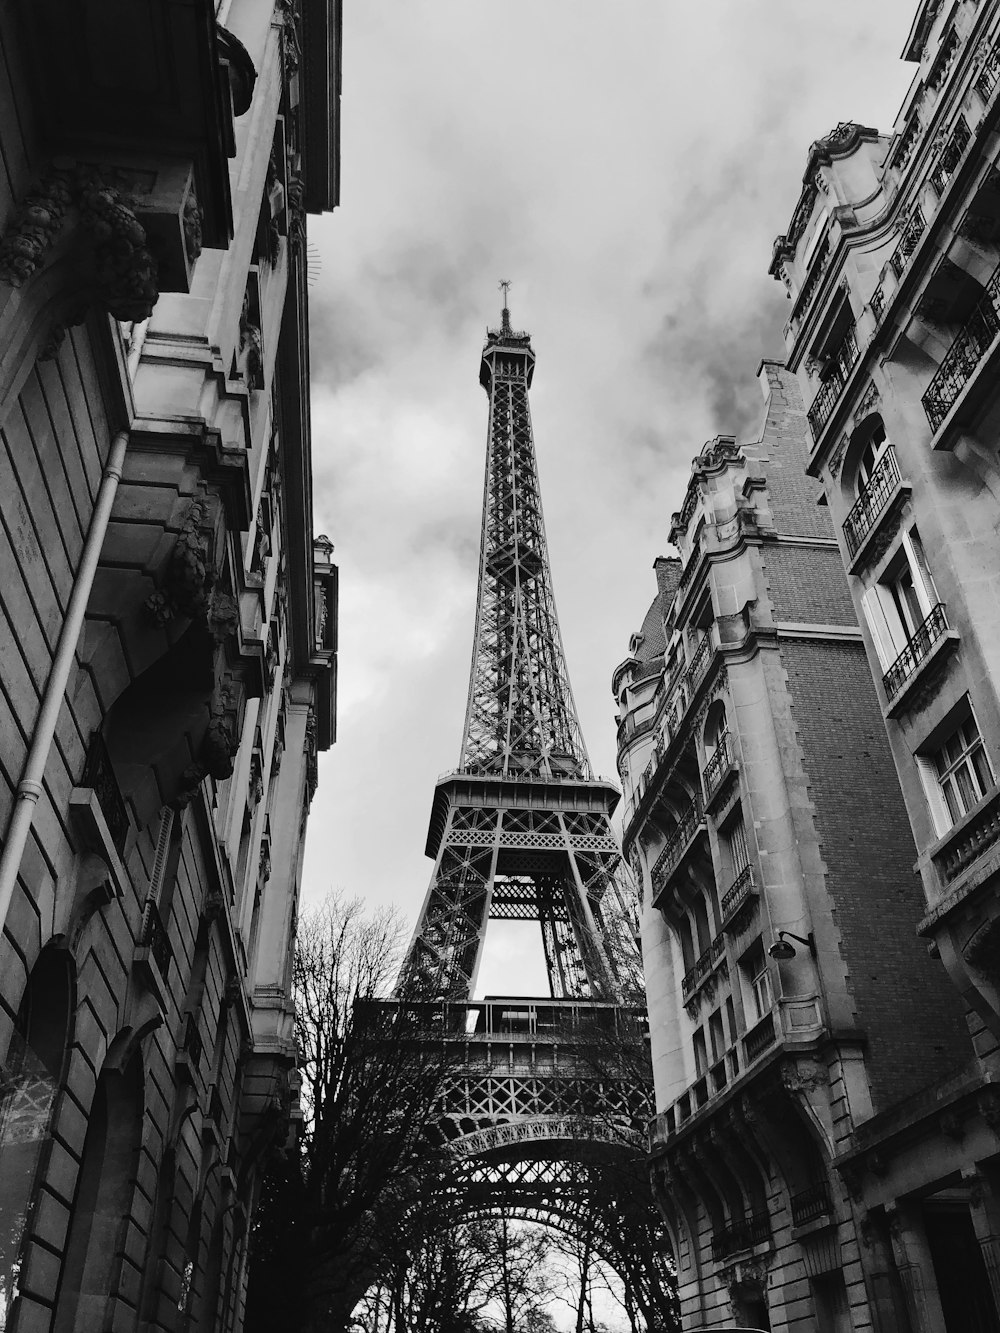 photo en niveaux de gris de la Tour Eiffel